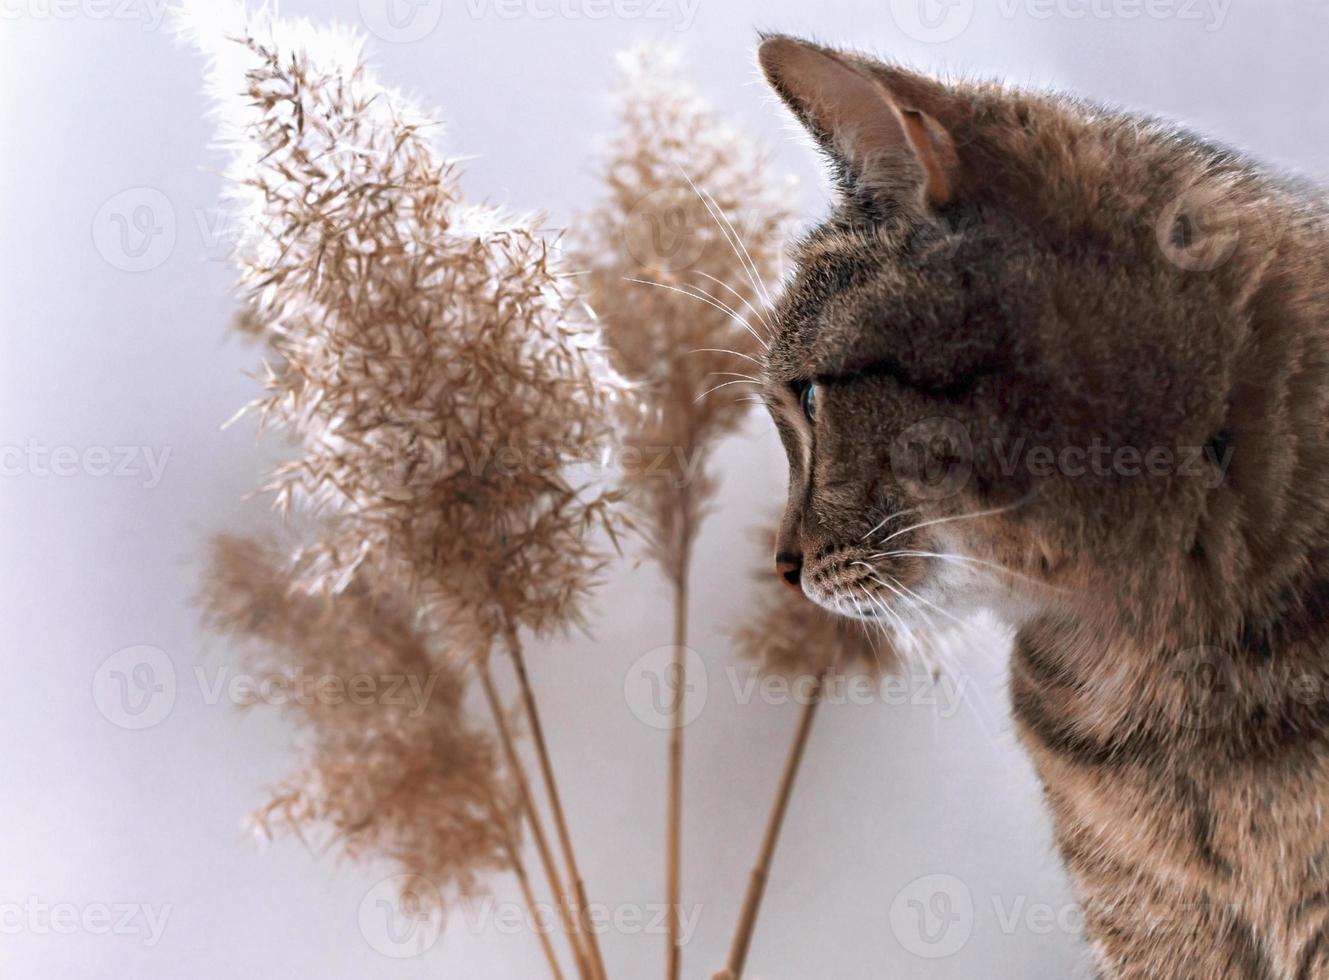 chat gris rayé tabby maquereau près de brindilles de canne sèches et moelleuses, mise au point sélective, palette neutre photo